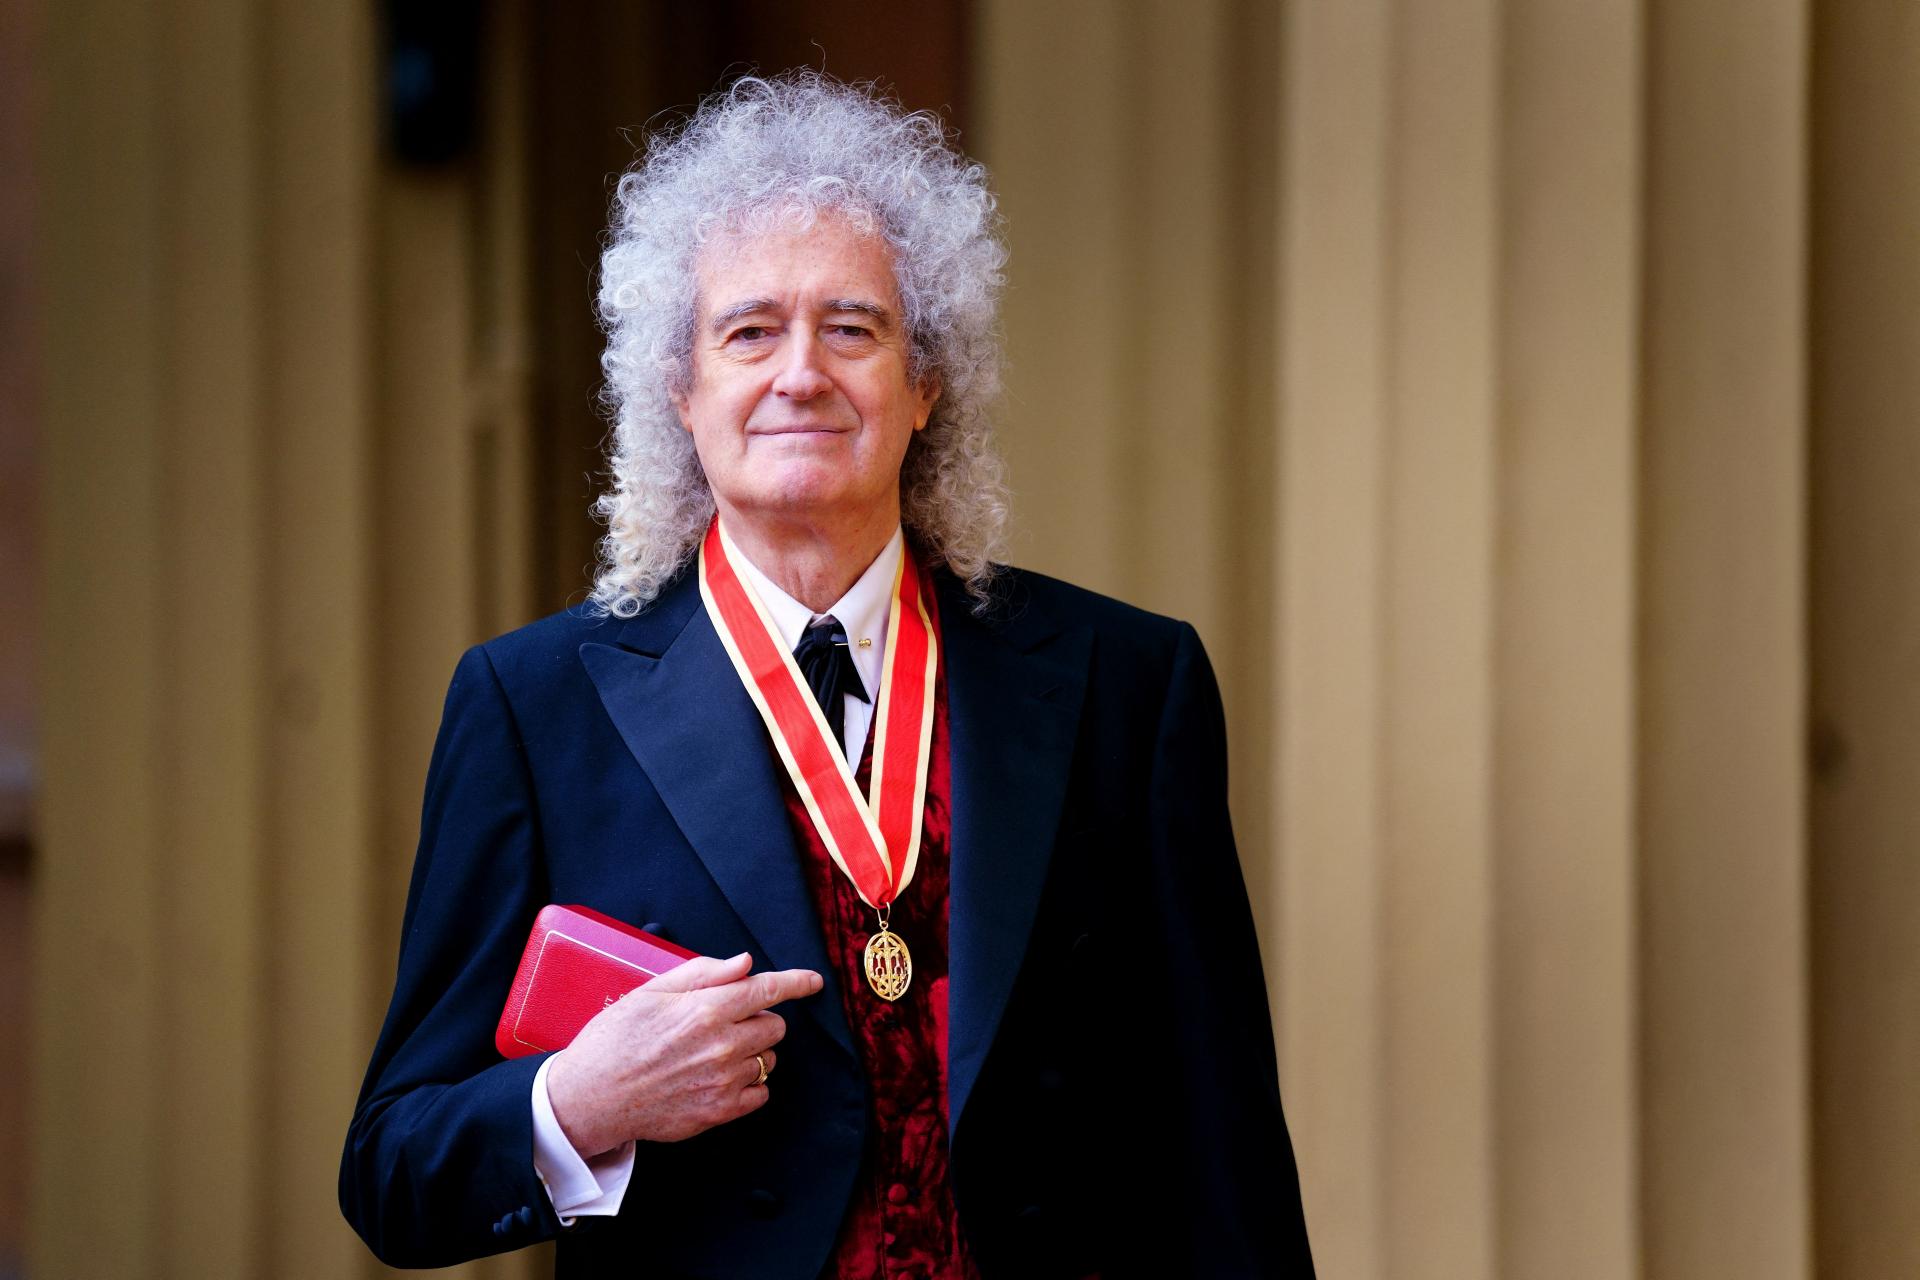 Rockový gitarista Brian May zo skupiny Queen bol povýšený kráľ Karolom III. do rytierskeho stavu